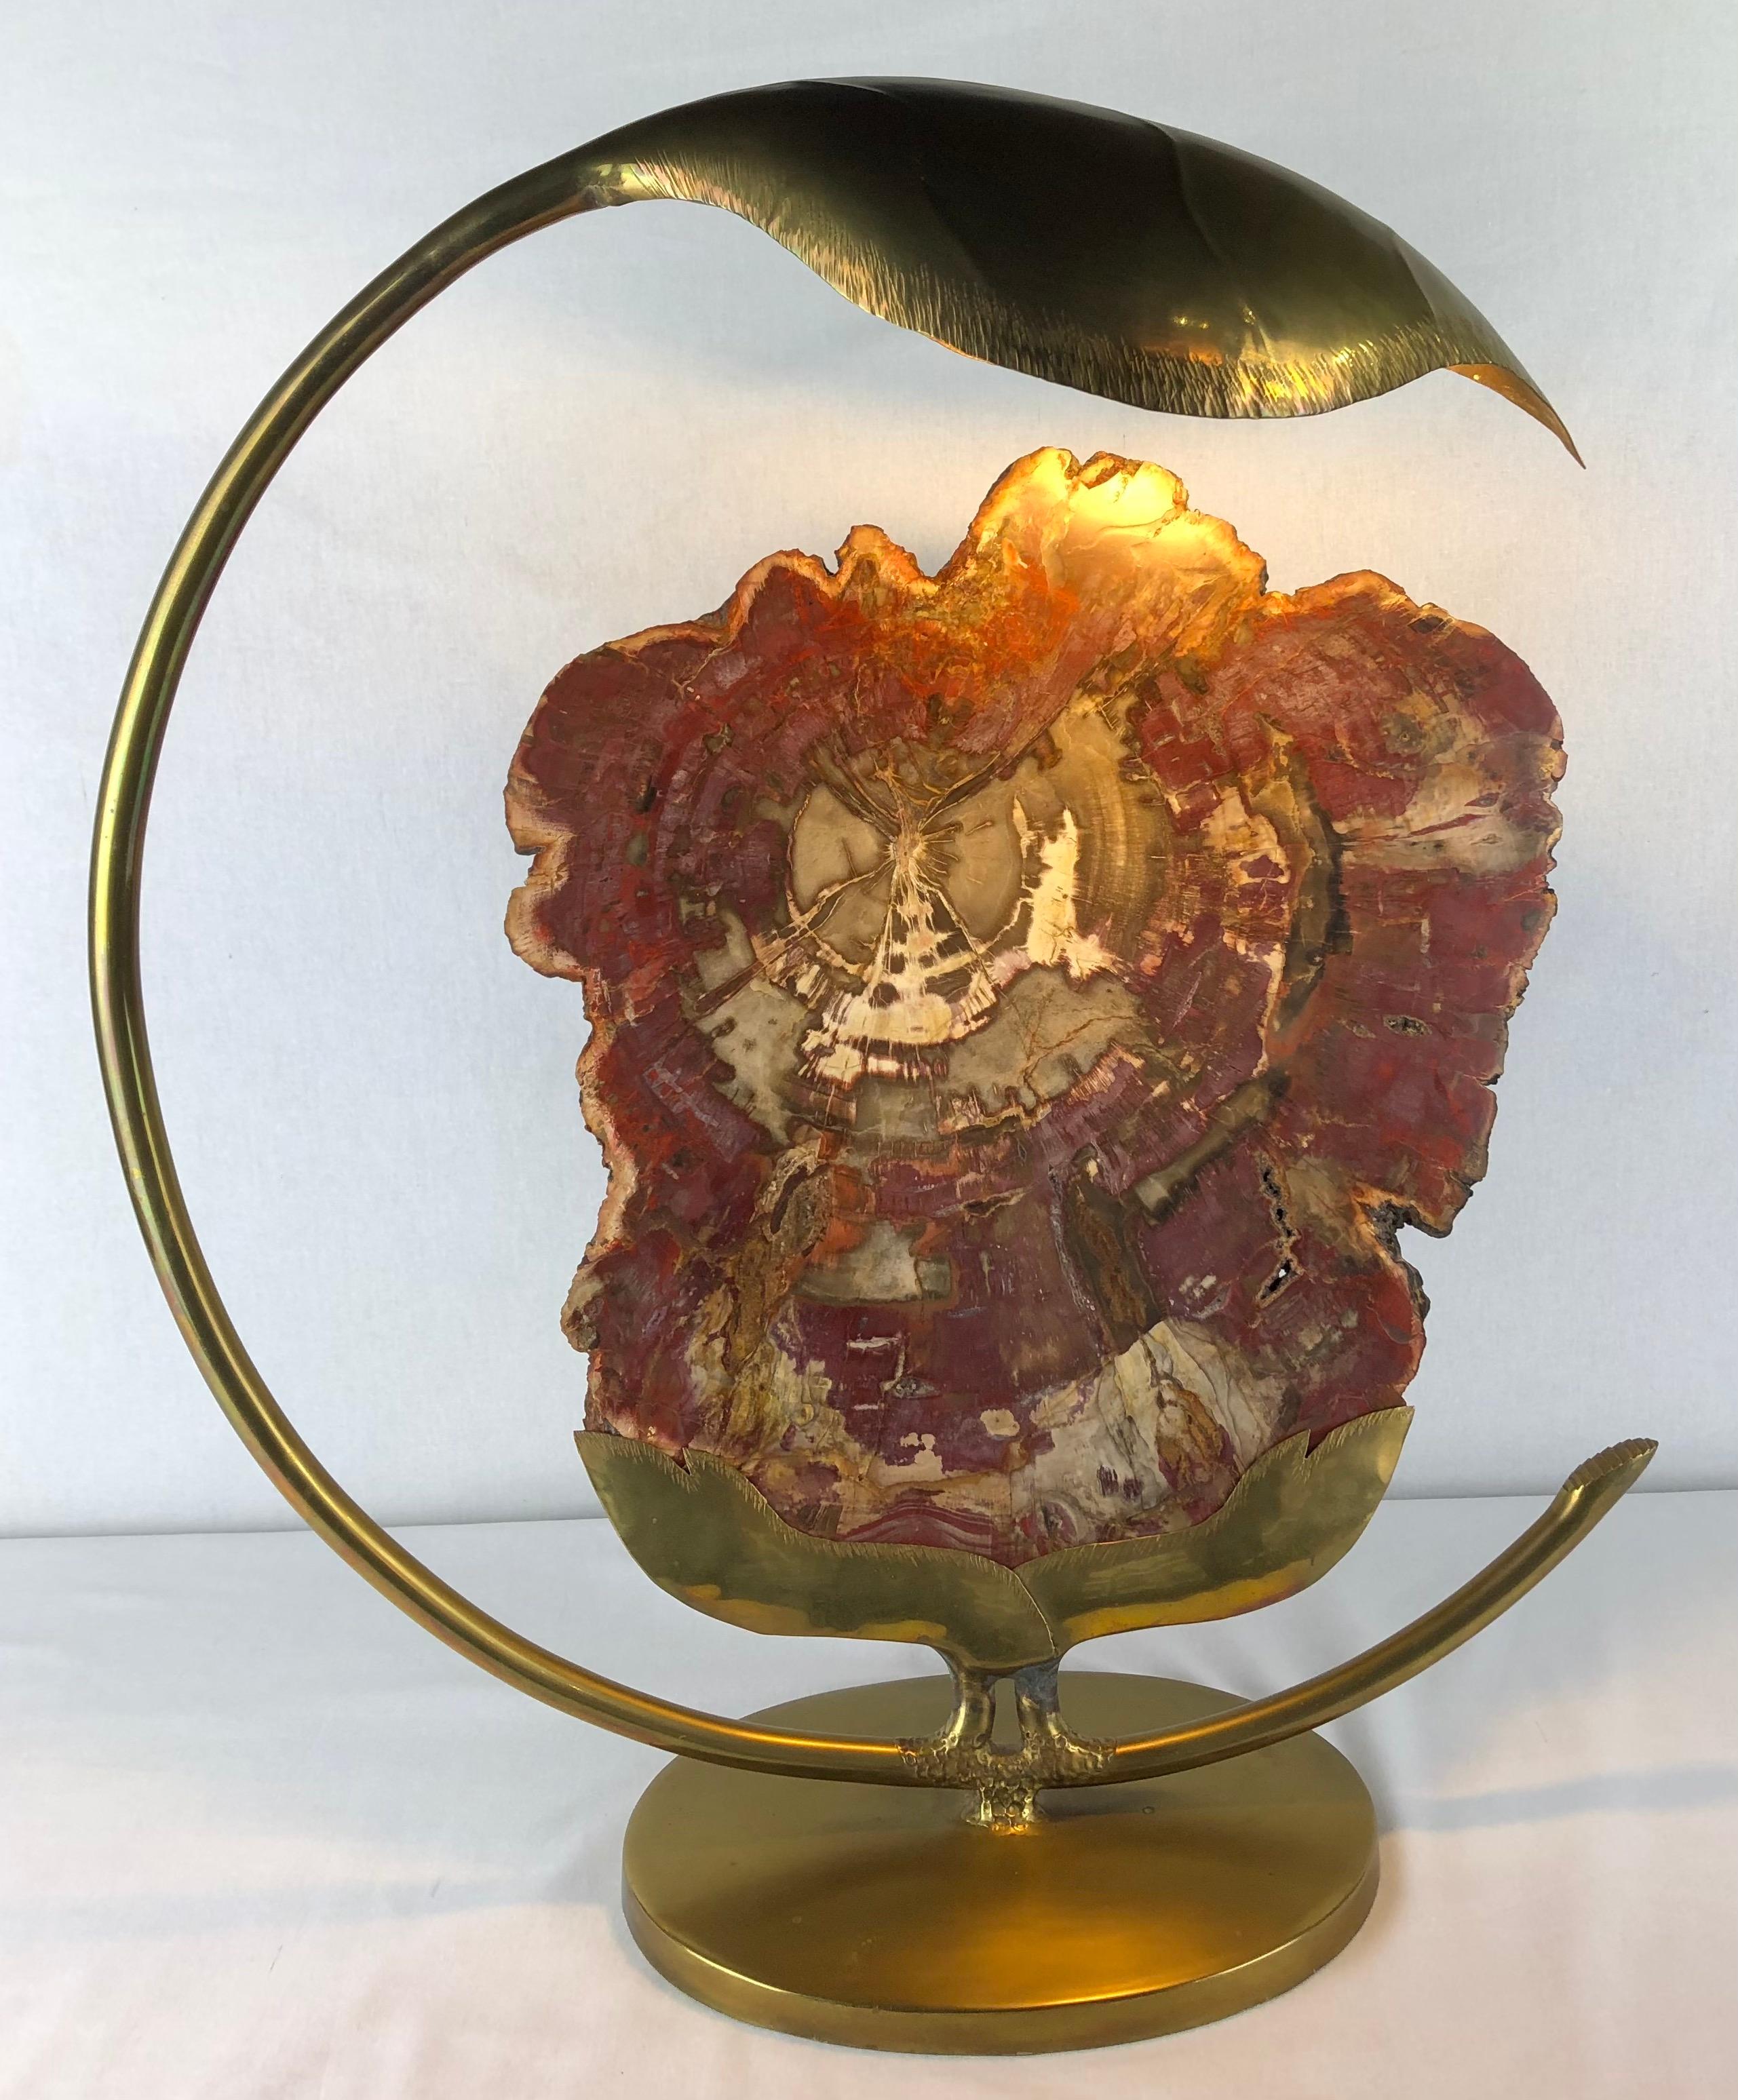 Cette lampe de table remarquable, conçue par le célèbre artiste français Henri Fernandez dans les années 1970, ajoutera une touche d'élégance sculpturale à n'importe quelle pièce. Fabriquée en laiton et dotée d'un élément unique en quartz ou en